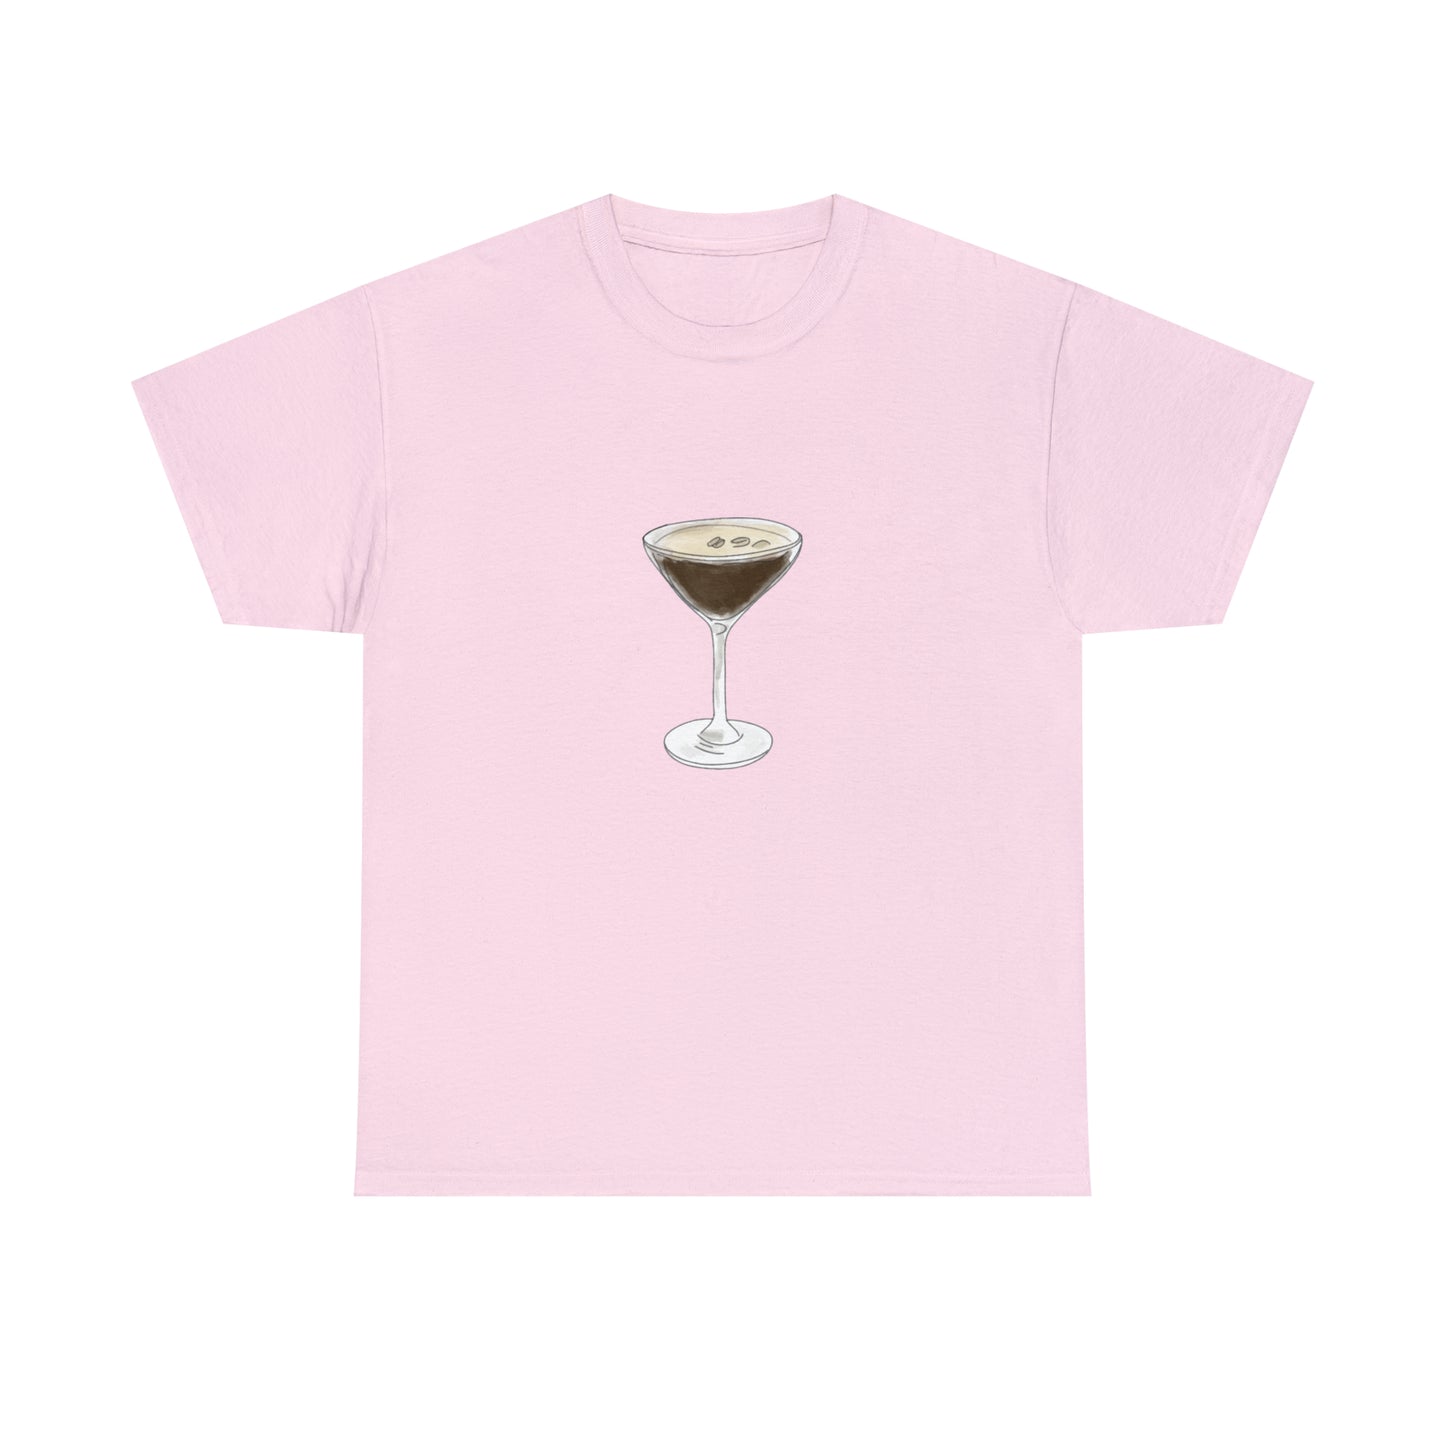 Espresso Martini T-Shirt